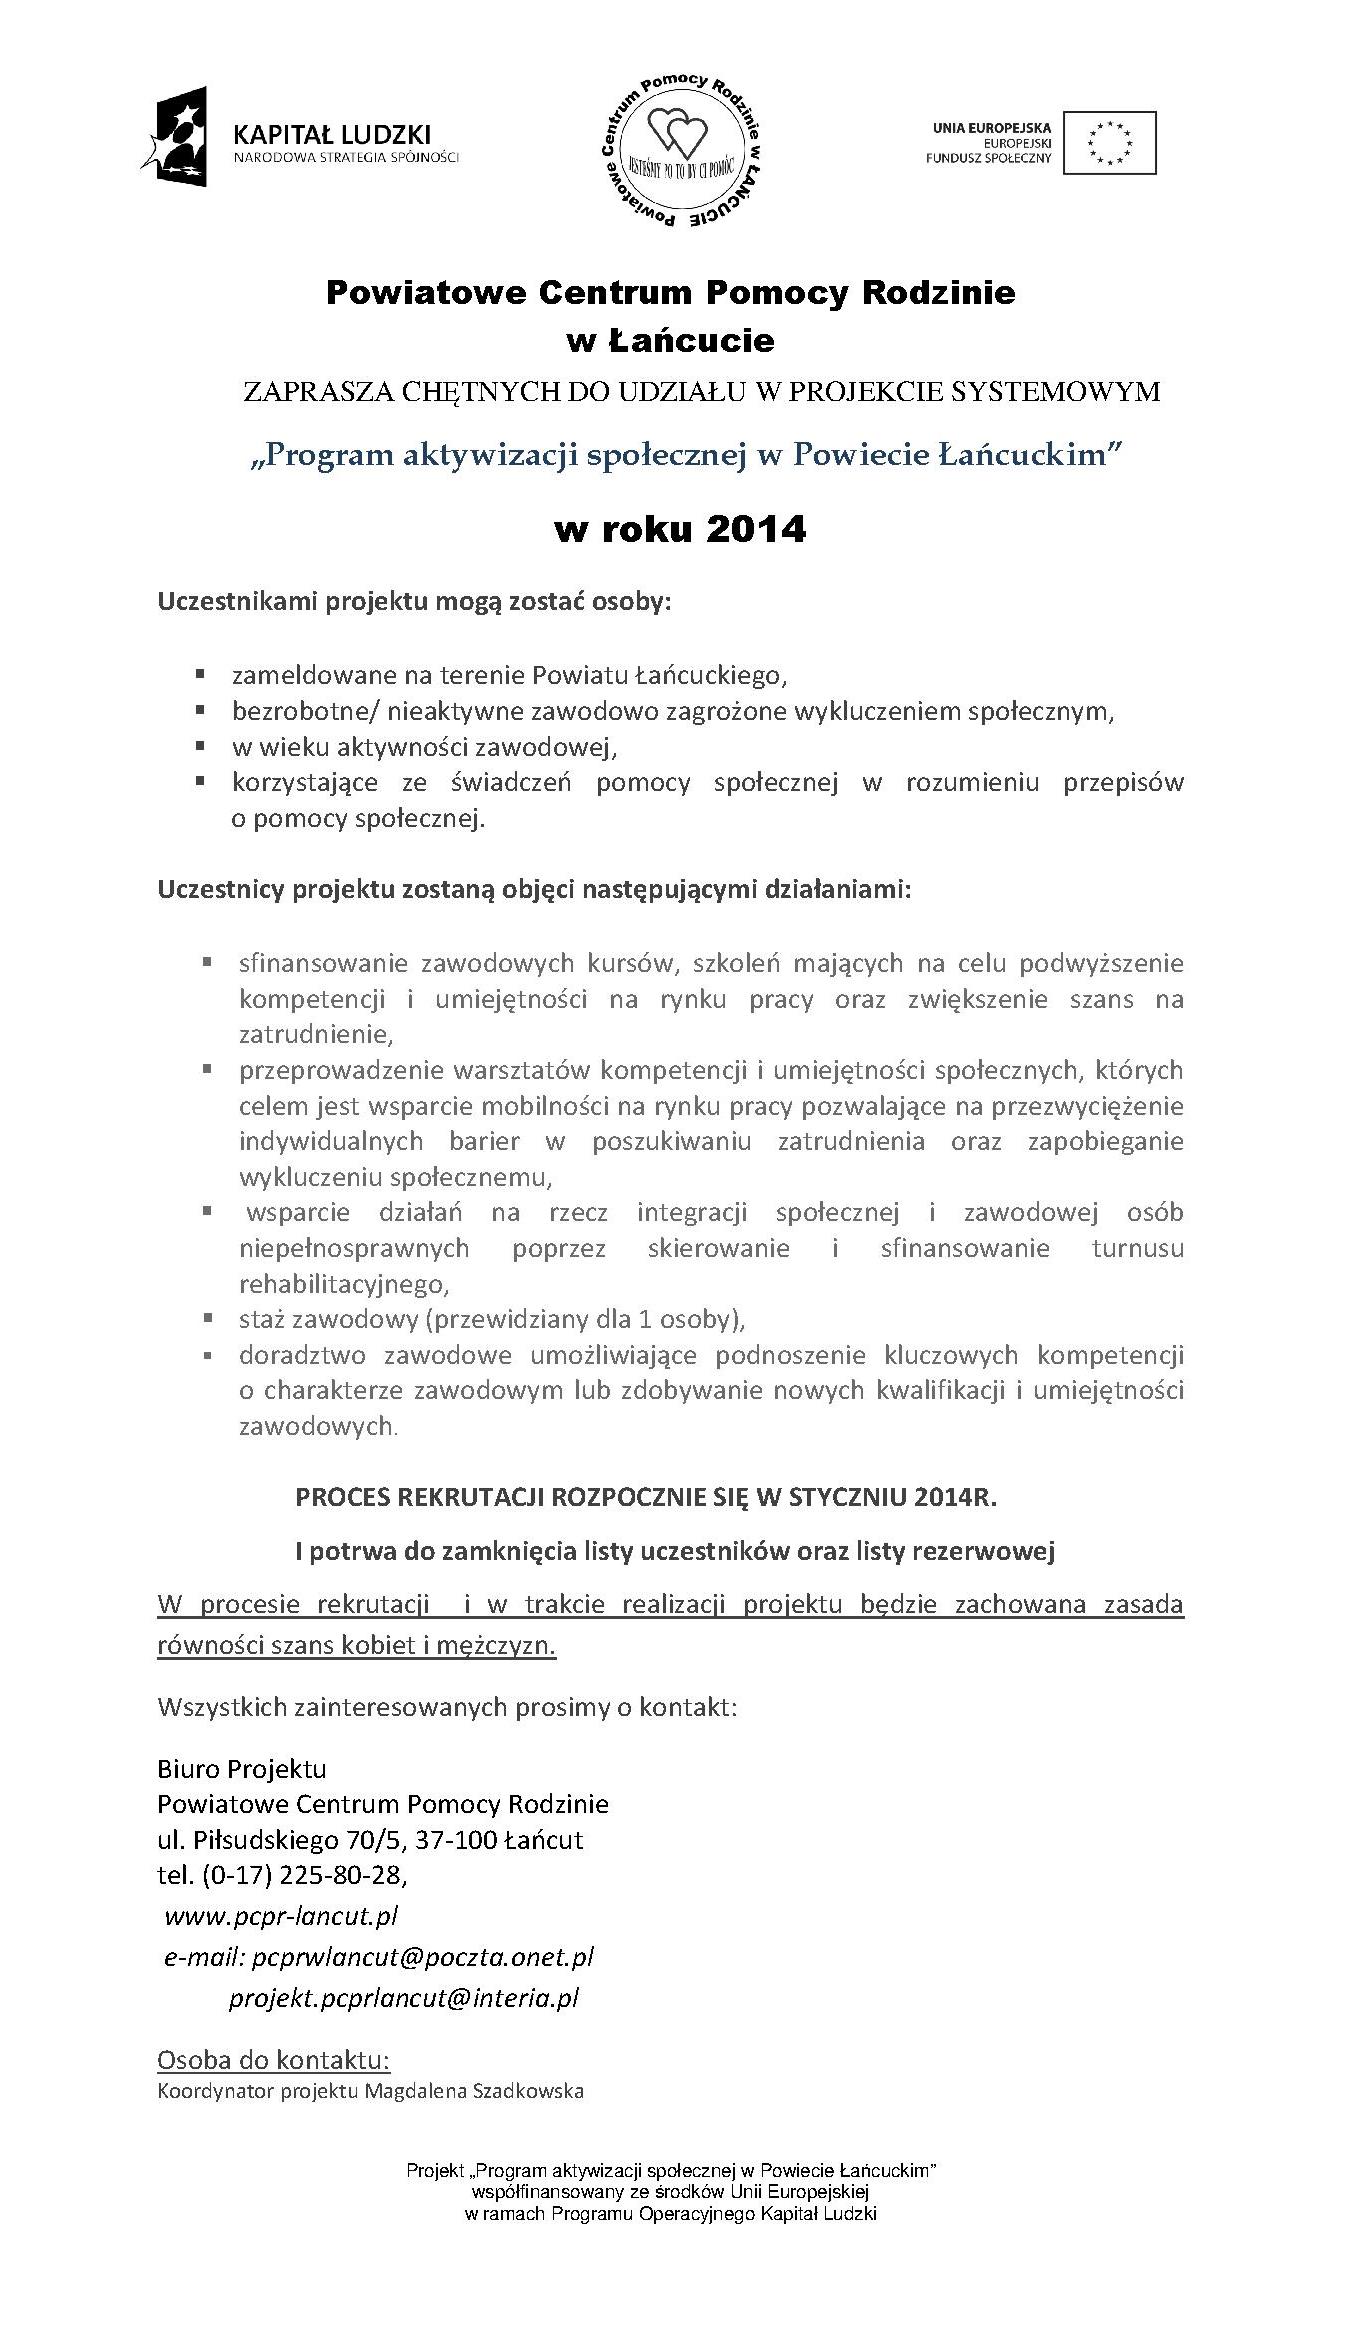 PCPR w Łańcucie zaprasza do udziału w projekcie systemowym Projekt aktywizacji społecznej w Powiecie Łańcuckie w roku 2014